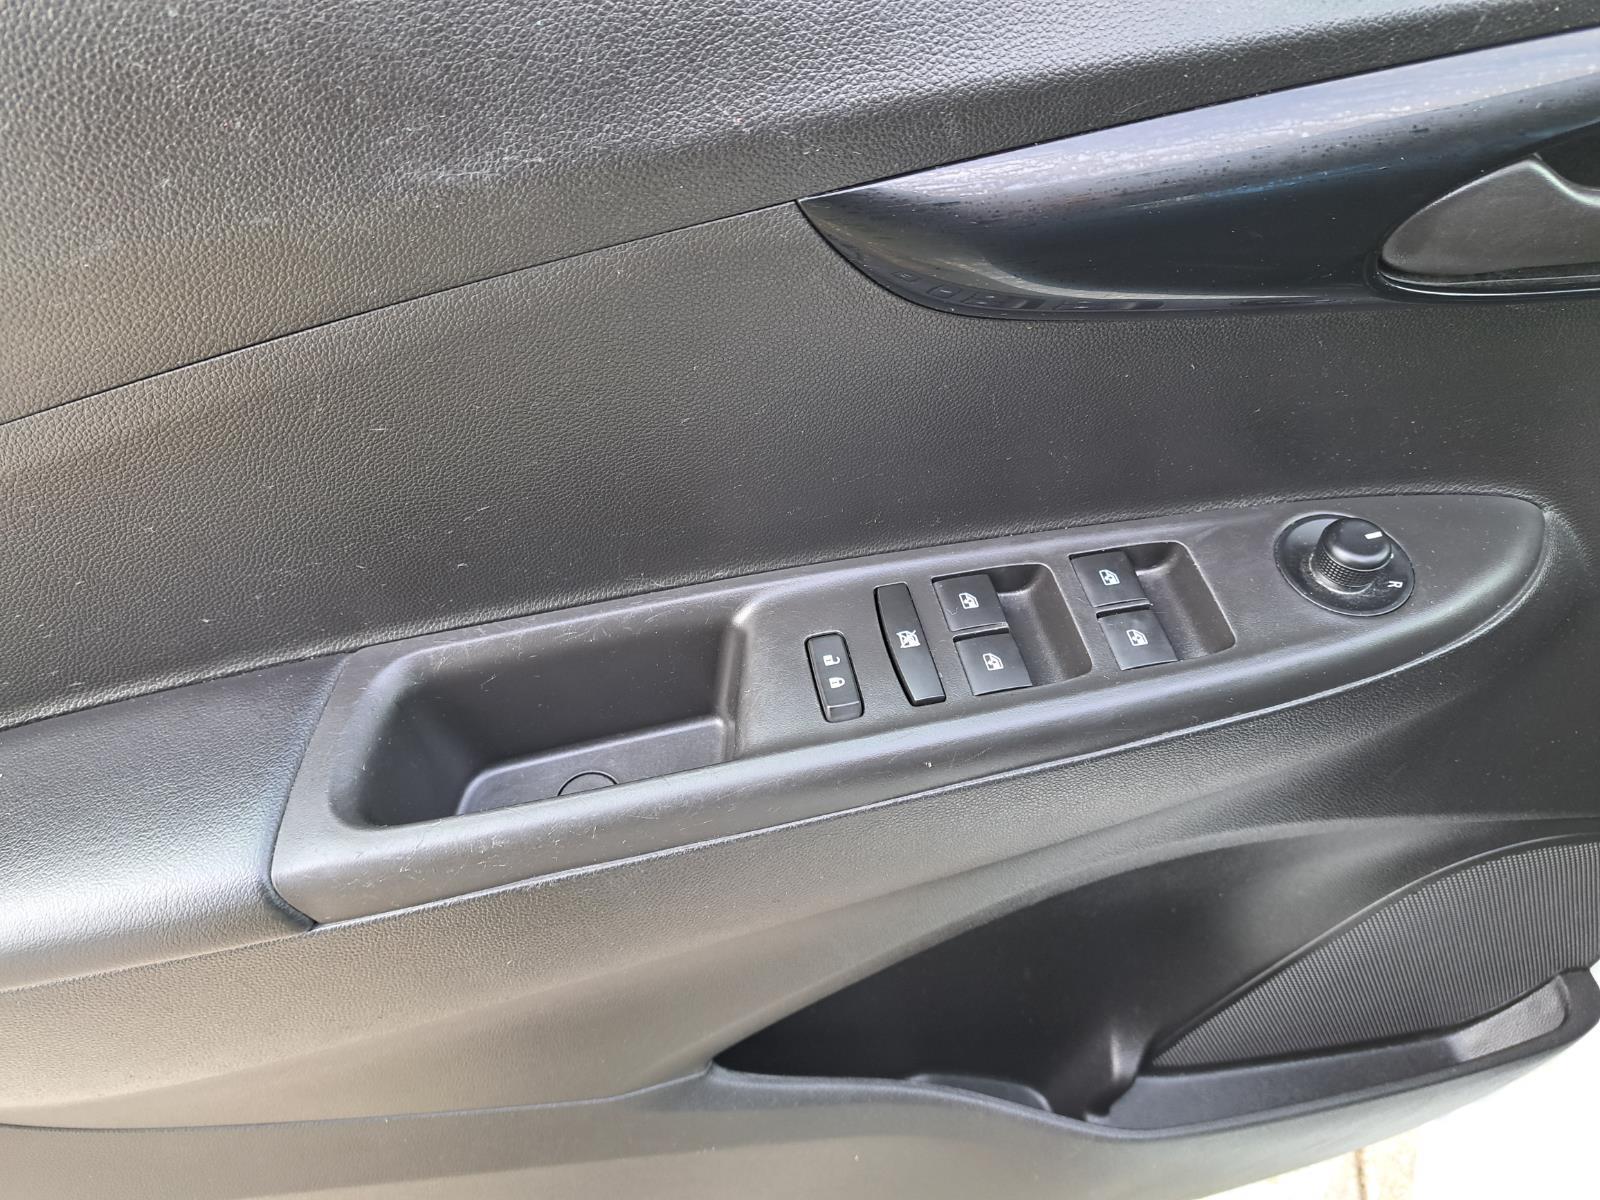 2020 Chevrolet Spark LT Hatchback 4 Dr. Front Wheel Drive mobile thumbnail 20